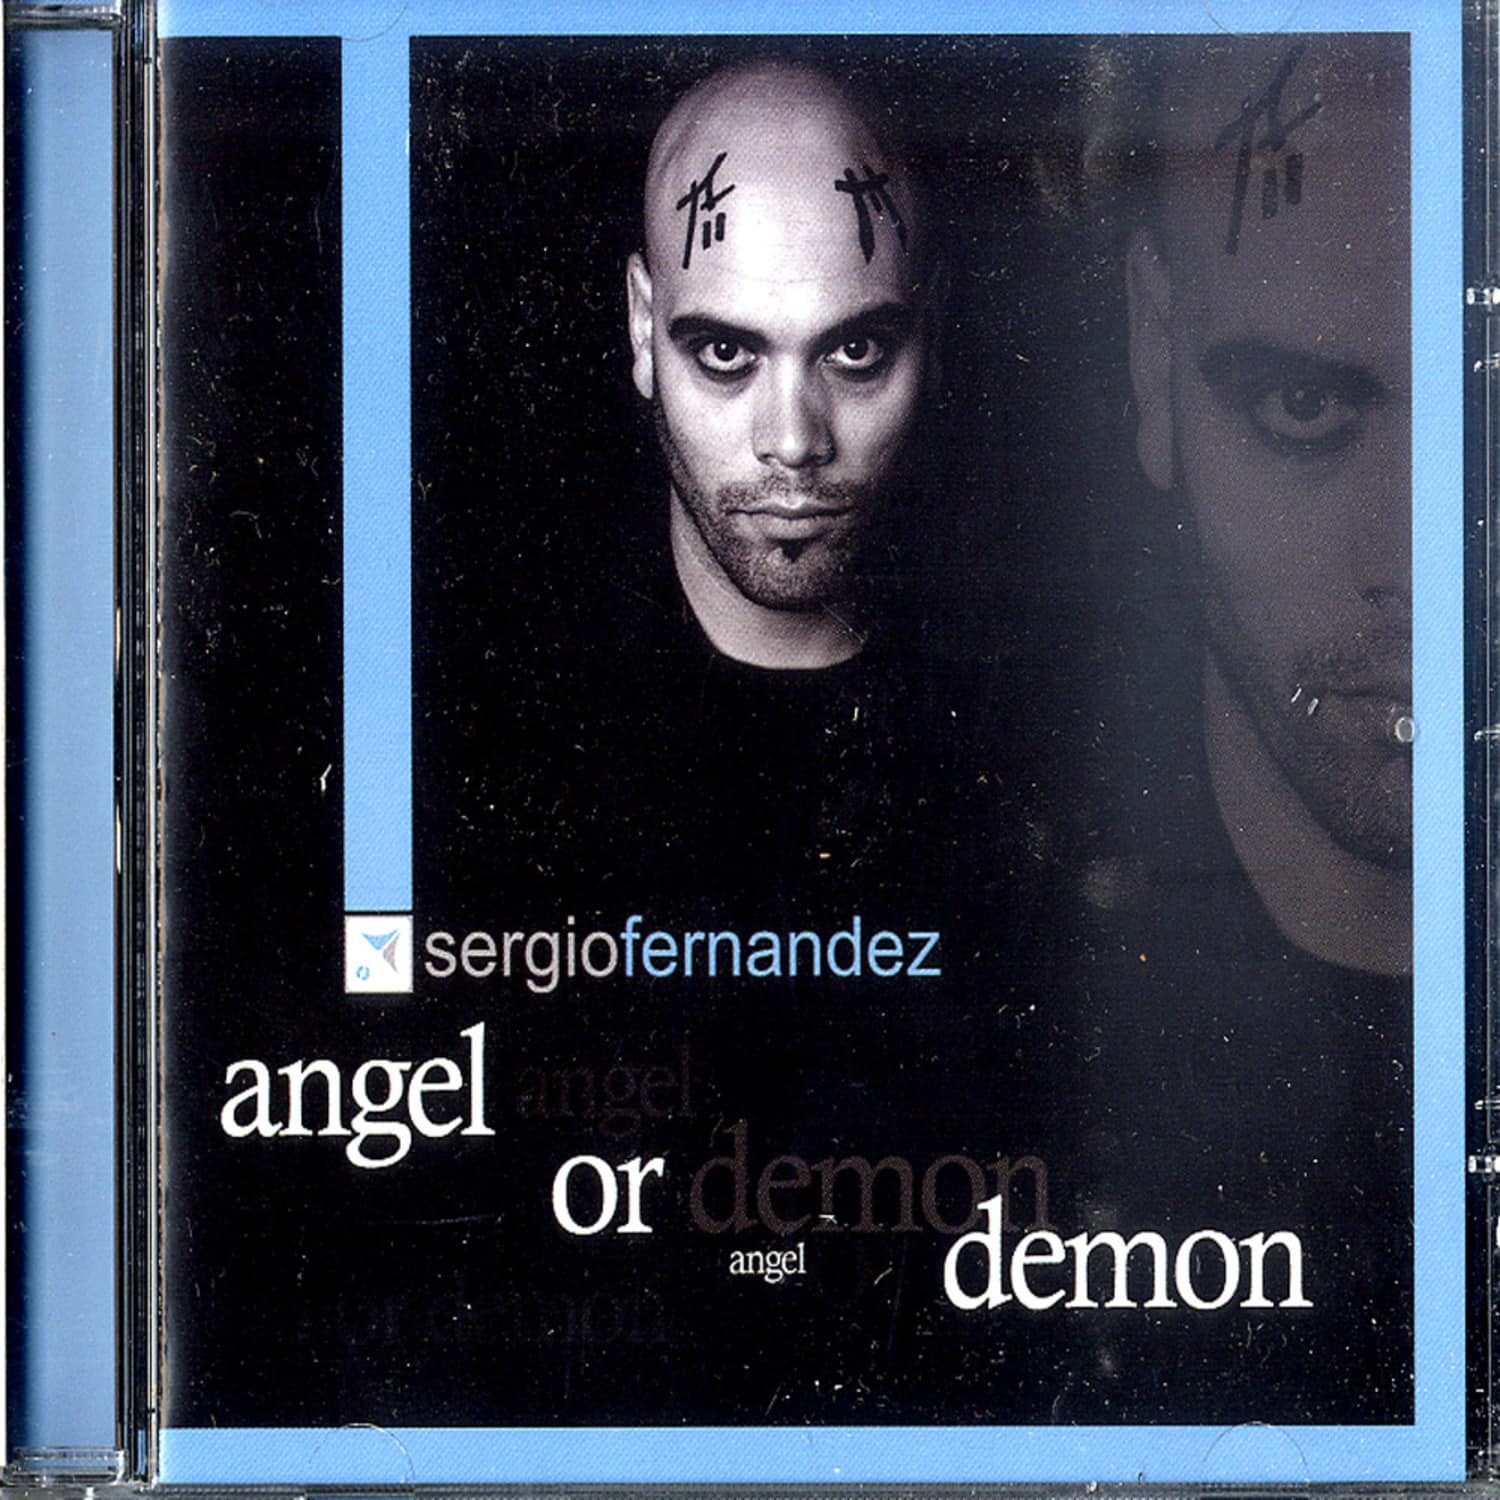 Sergio Fernandez - ANGEL OR DEMON 